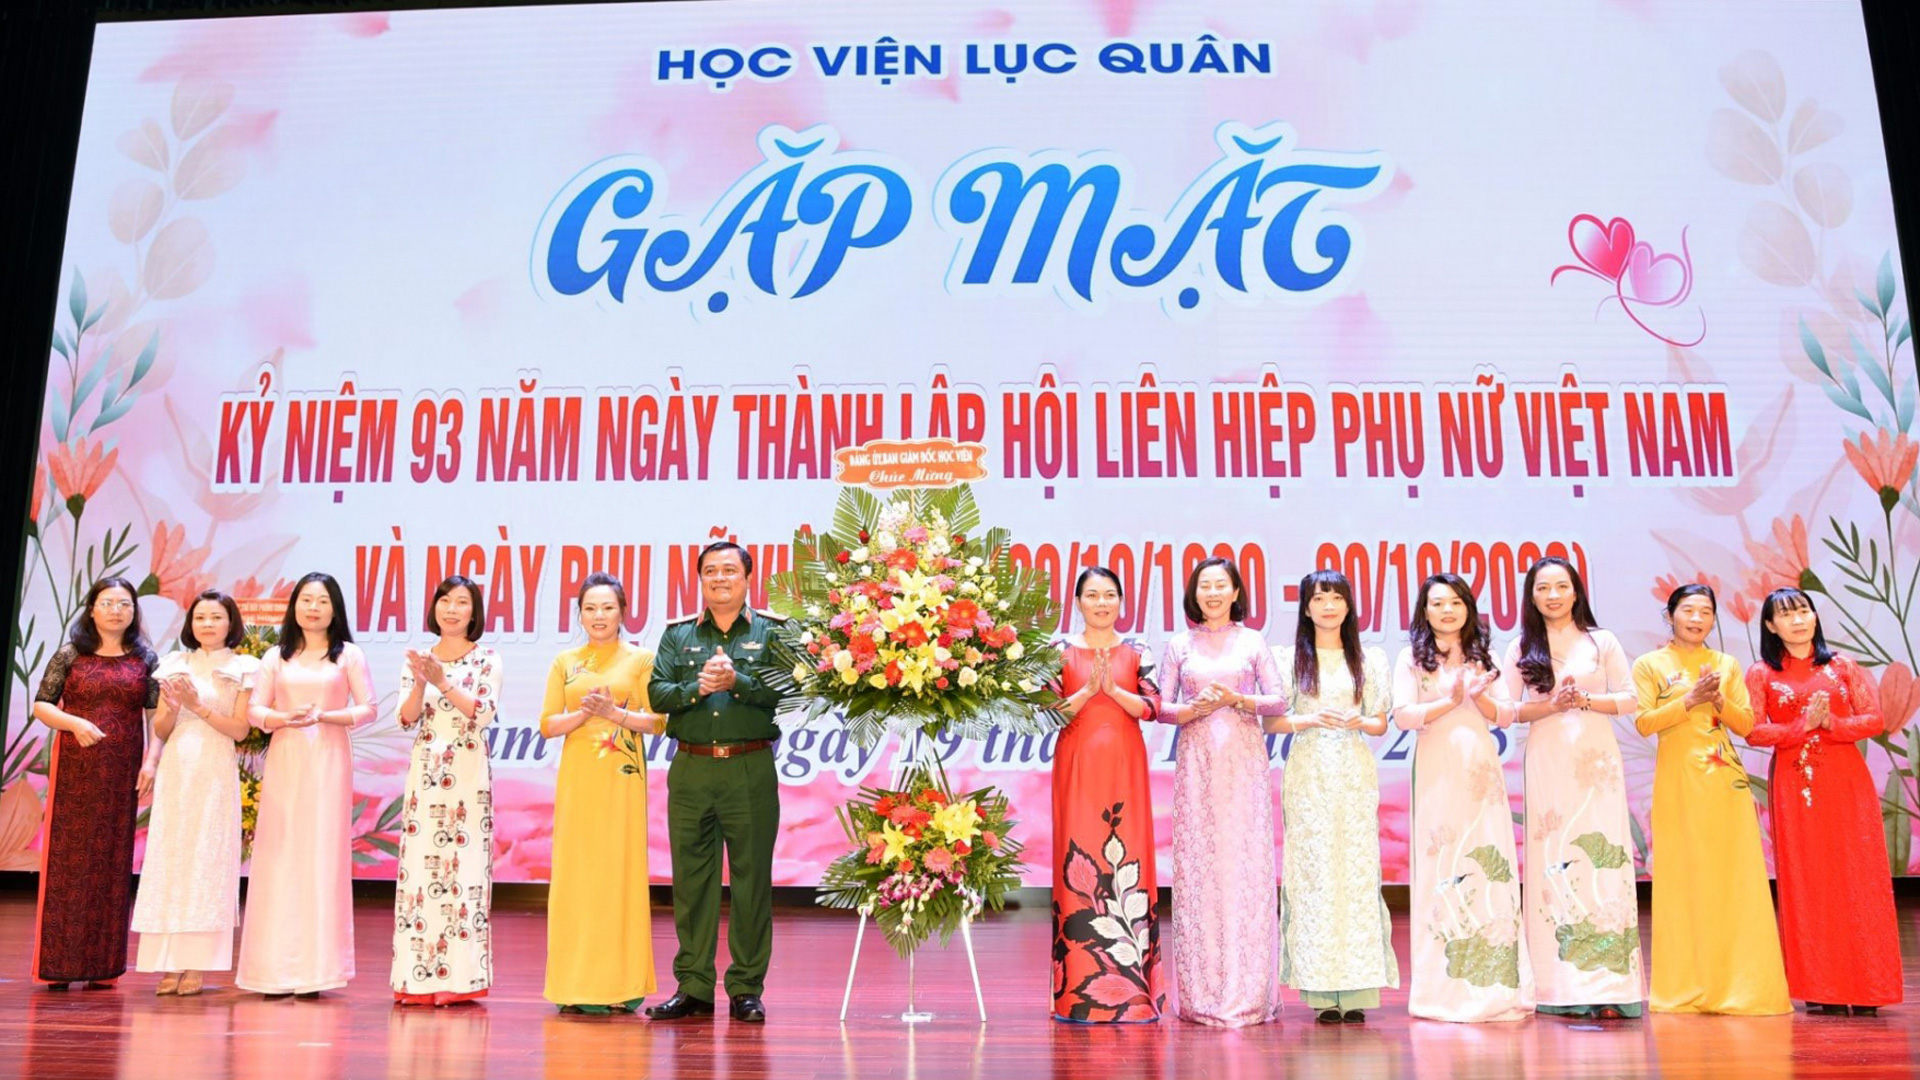 Học Viện Lục quân: Gặp mặt kỷ niệm 93 năm ngày Phụ nữ Việt Nam